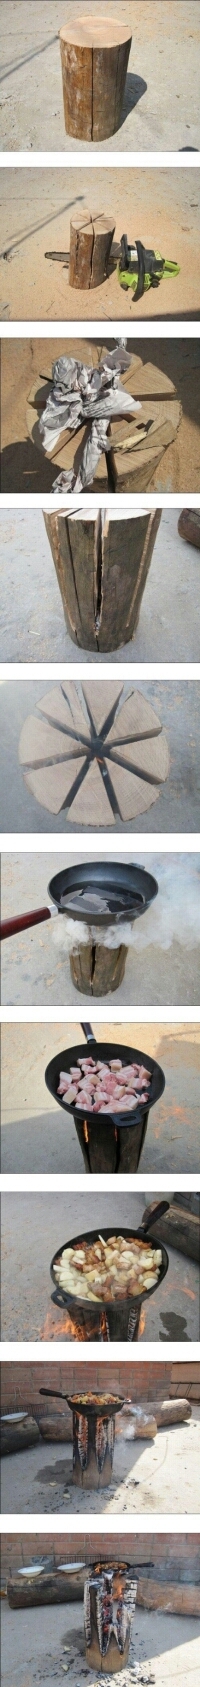 outdoor cooking - meme